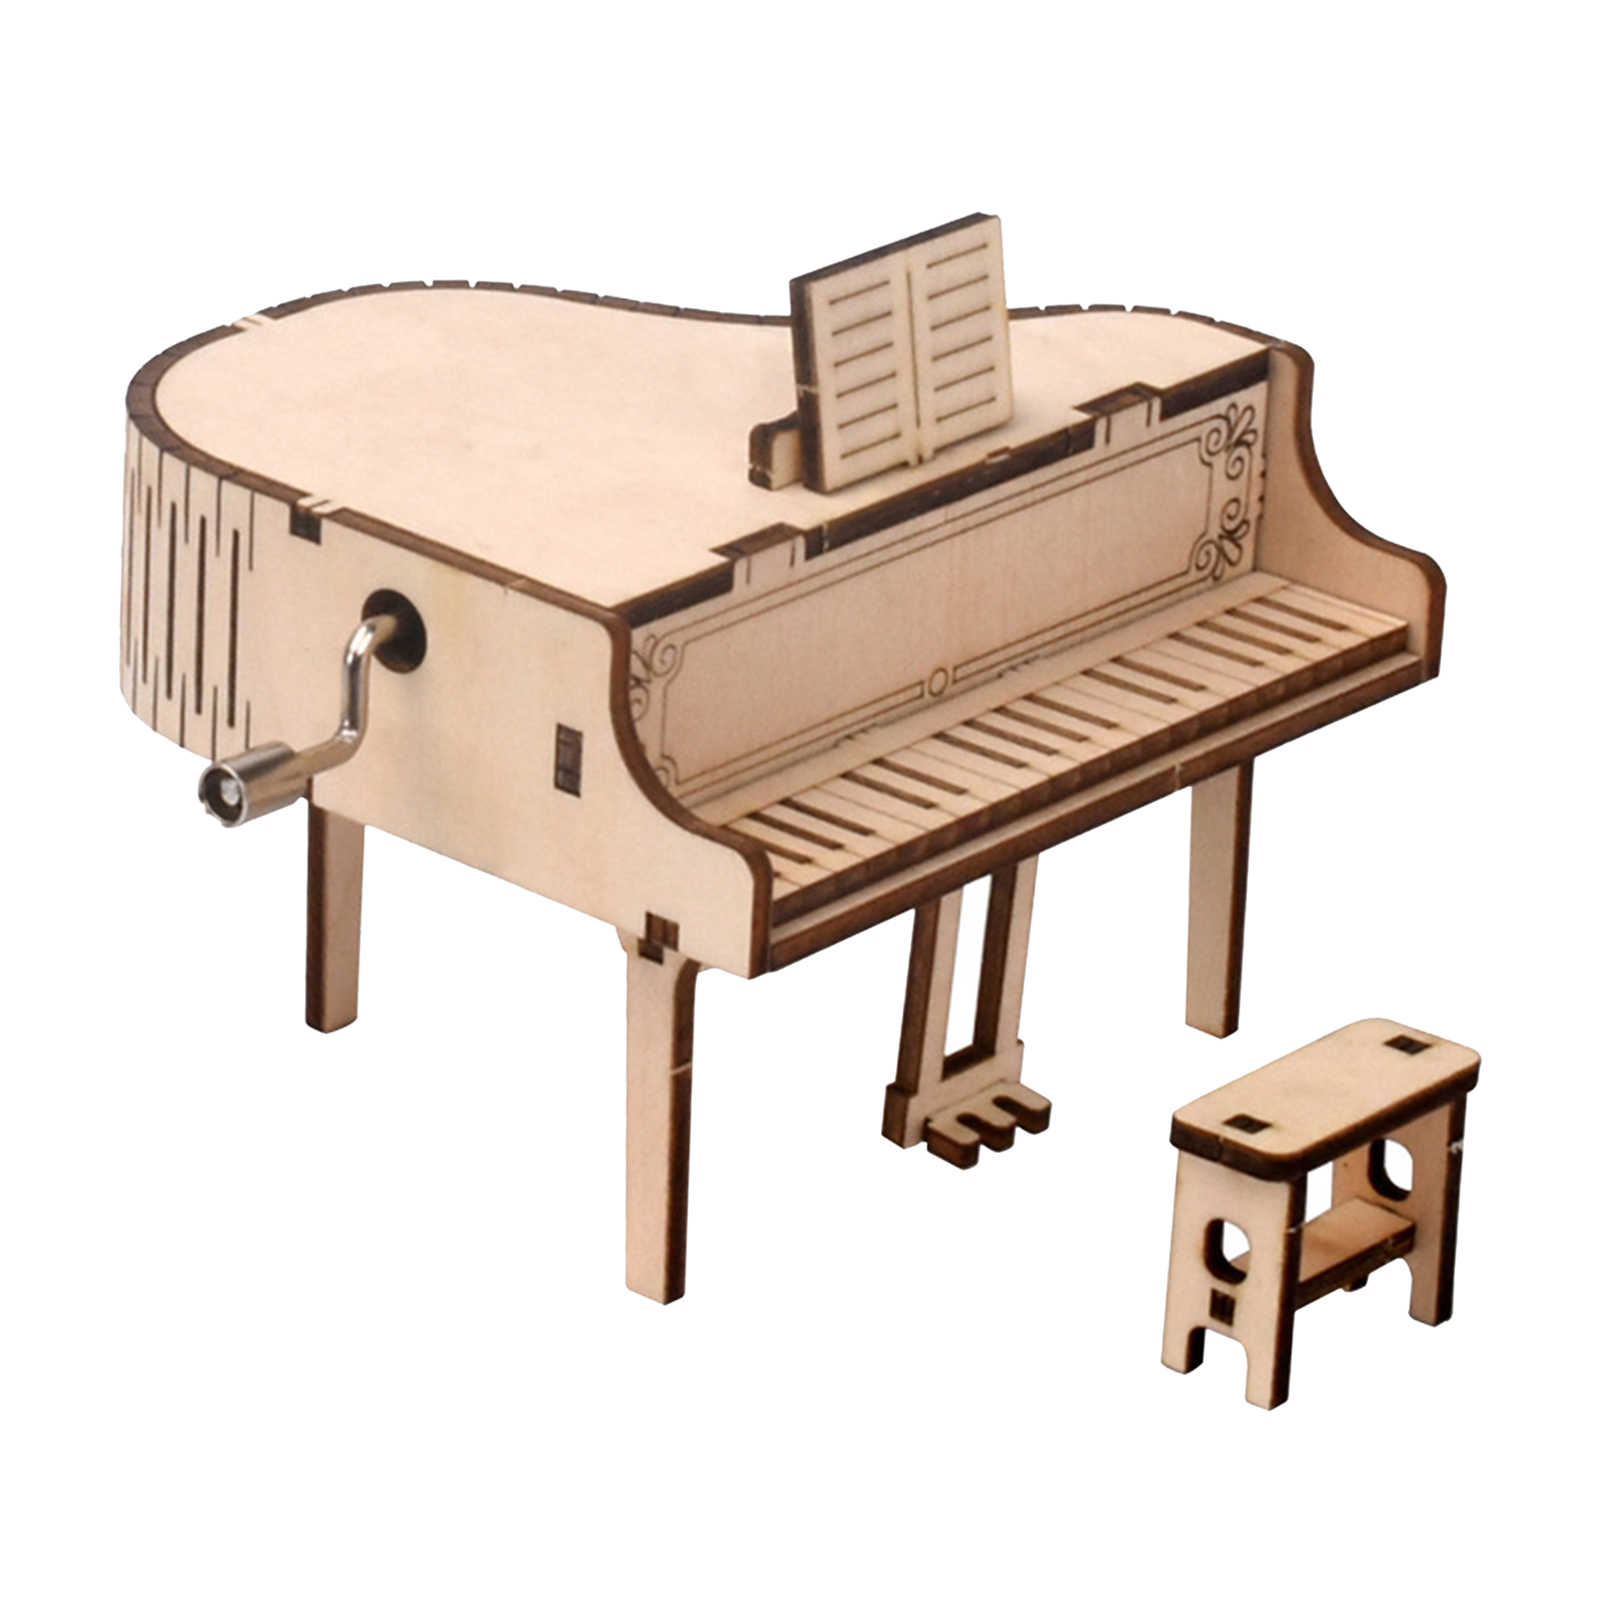 Bộ Lắp Ráp Đàn Piano 3d Bằng Gỗ